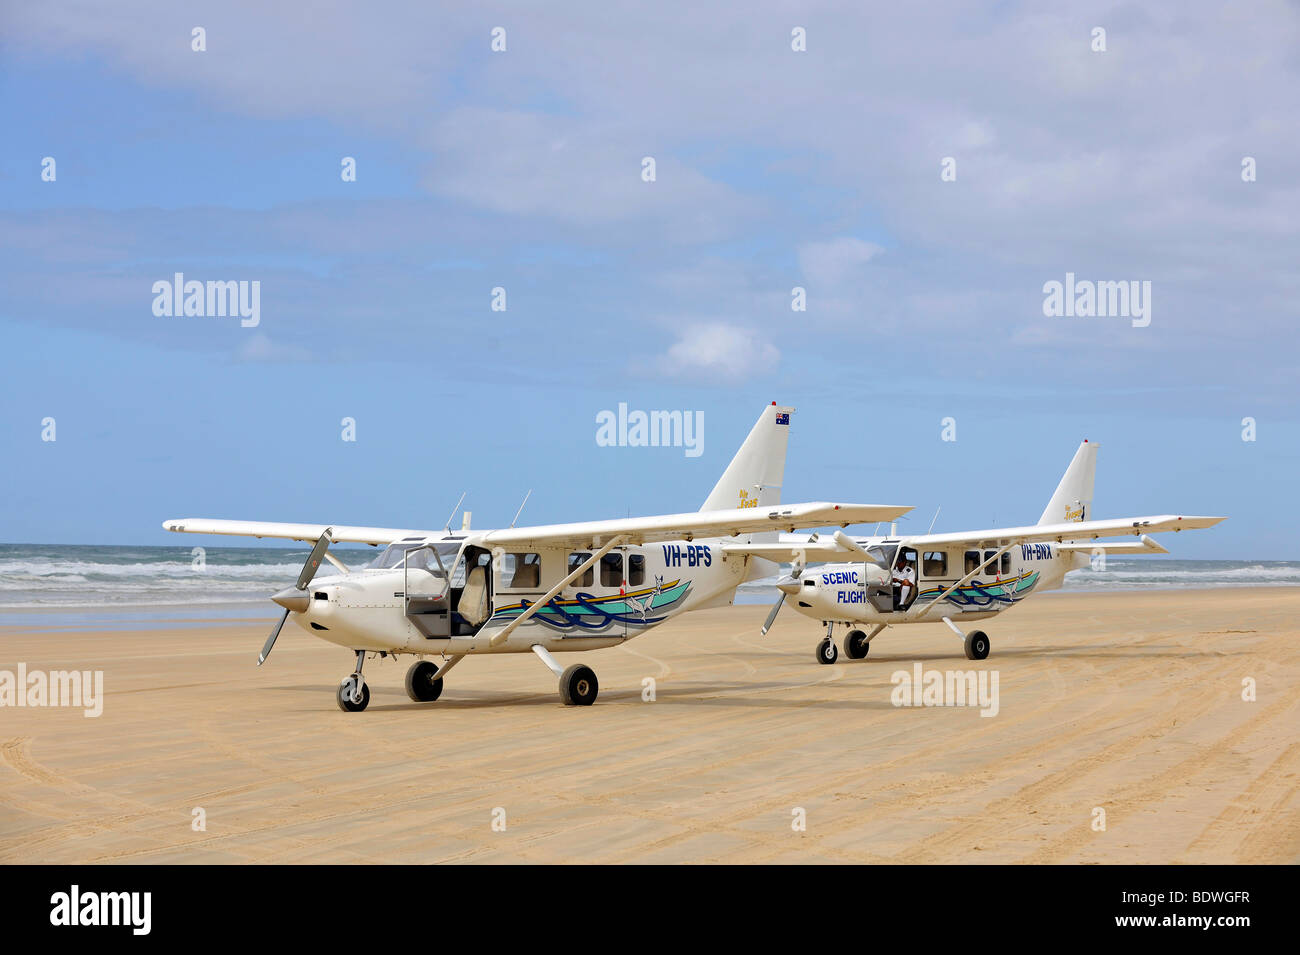 Avion sur soixante-quinze Mile Beach, un fonctionnaire l'autoroute, le seul aéroport plage officielle sur une piste de sable, l'UNESCO Worl Banque D'Images